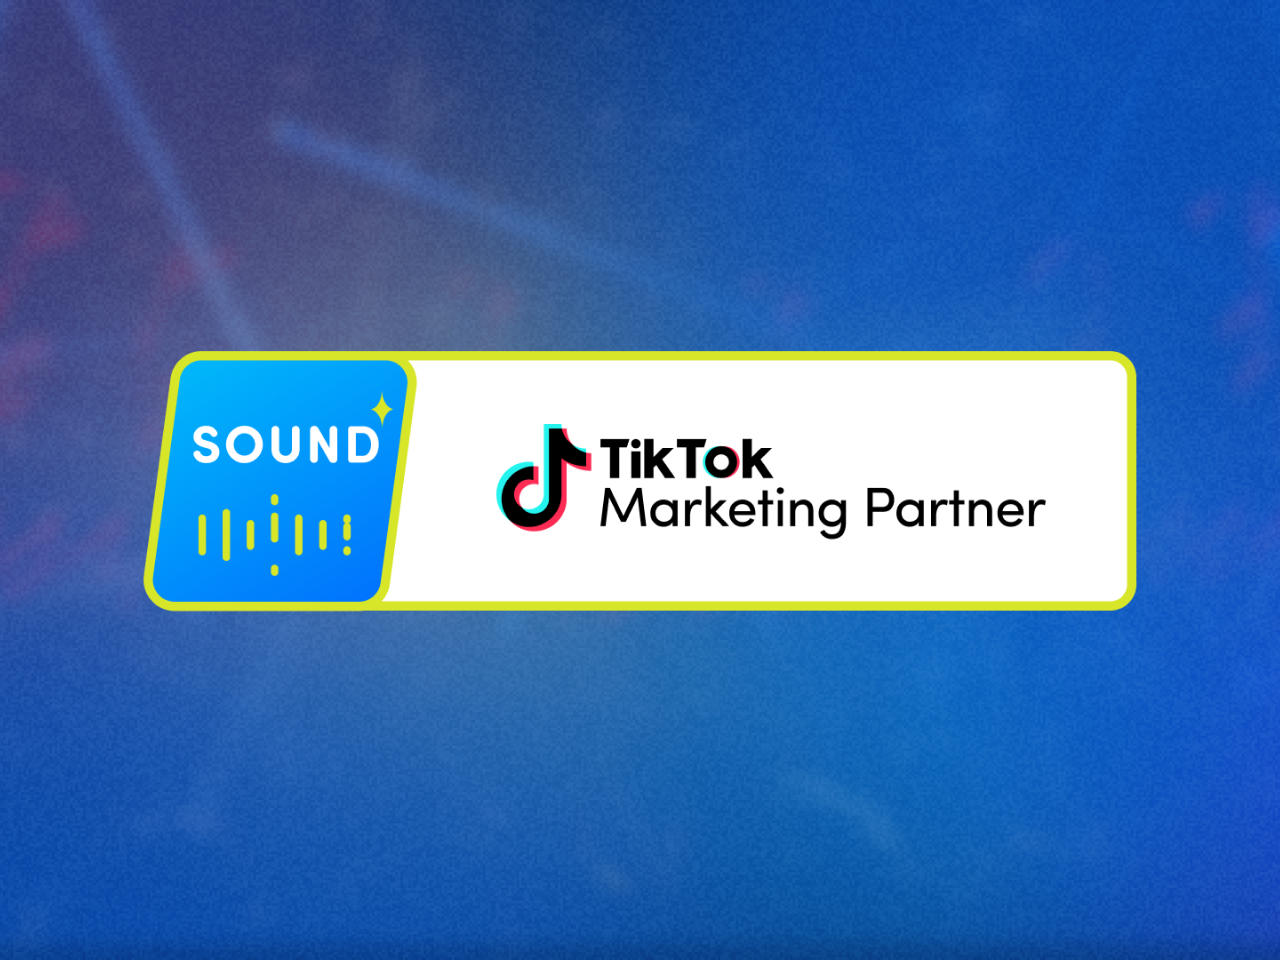 TikTok広告における数多くの楽曲制作の実績が認められ、TikTokマーケティングパートナープログラムにおける音楽領域の公認バッジであるSoundバッジを日本国内で初めて取得しました。